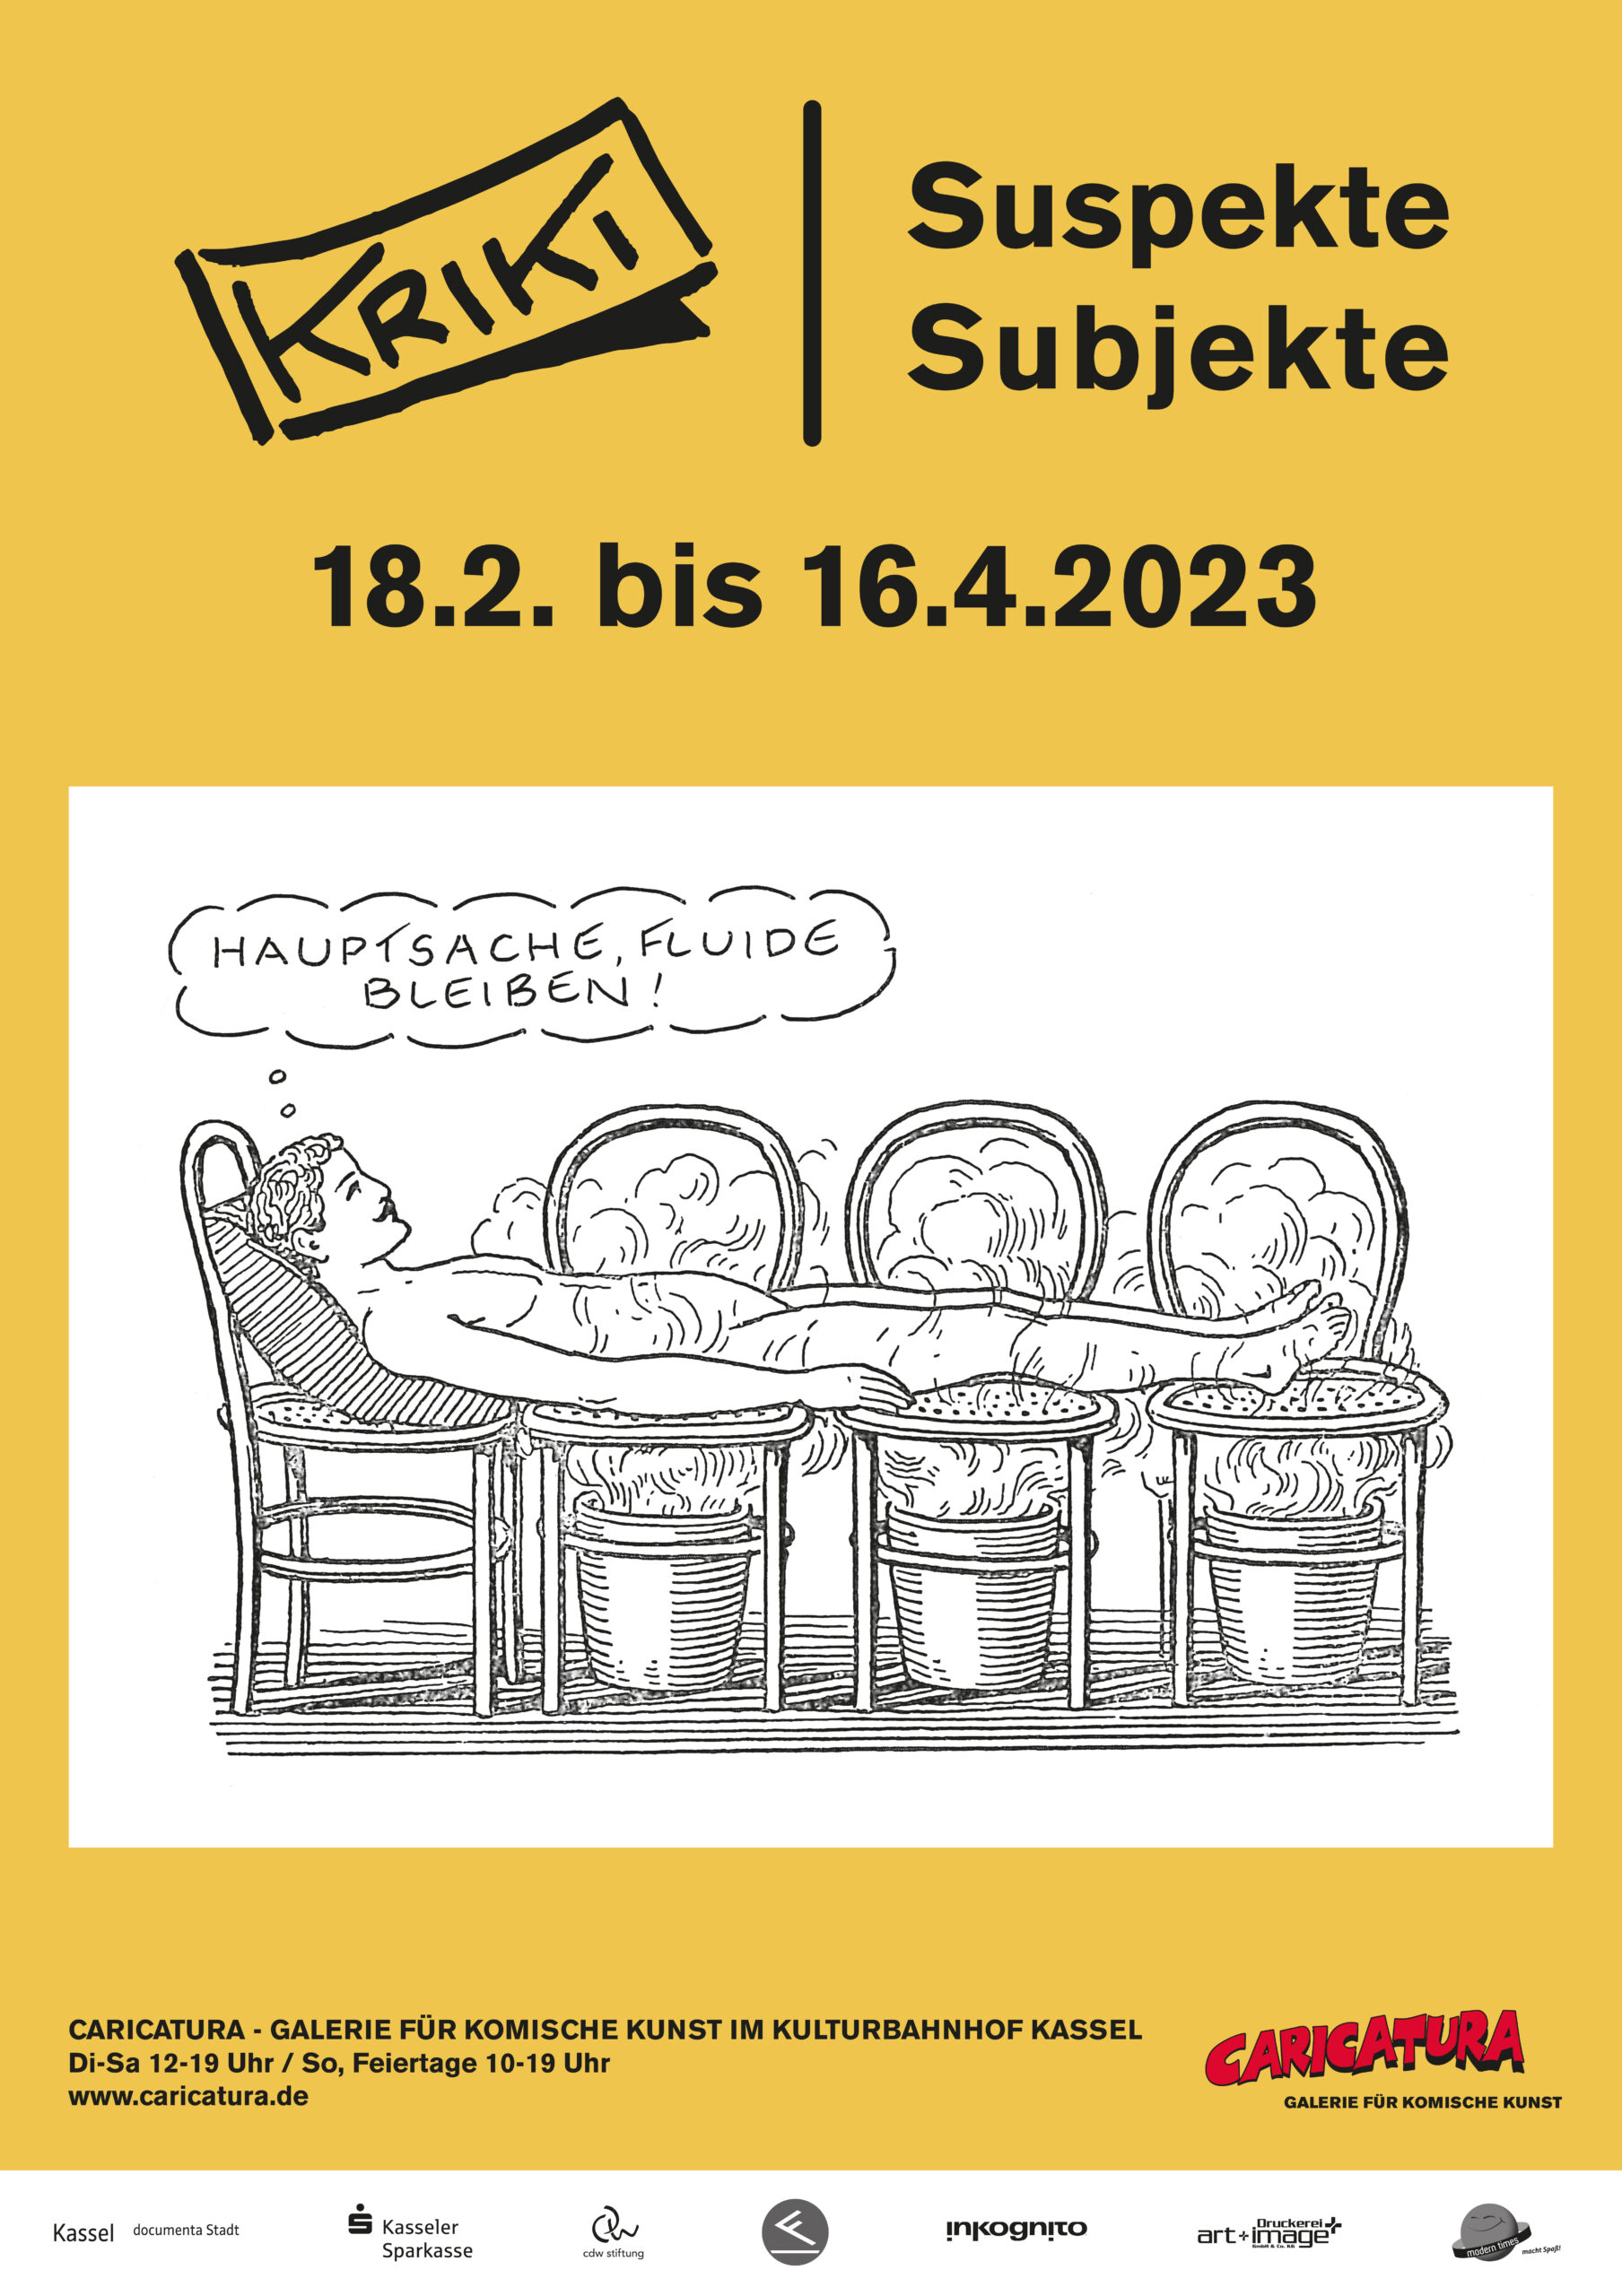 Kriki - Suspekte Subjekte - Ausstellung in der Caricatura Galerie, Kassel